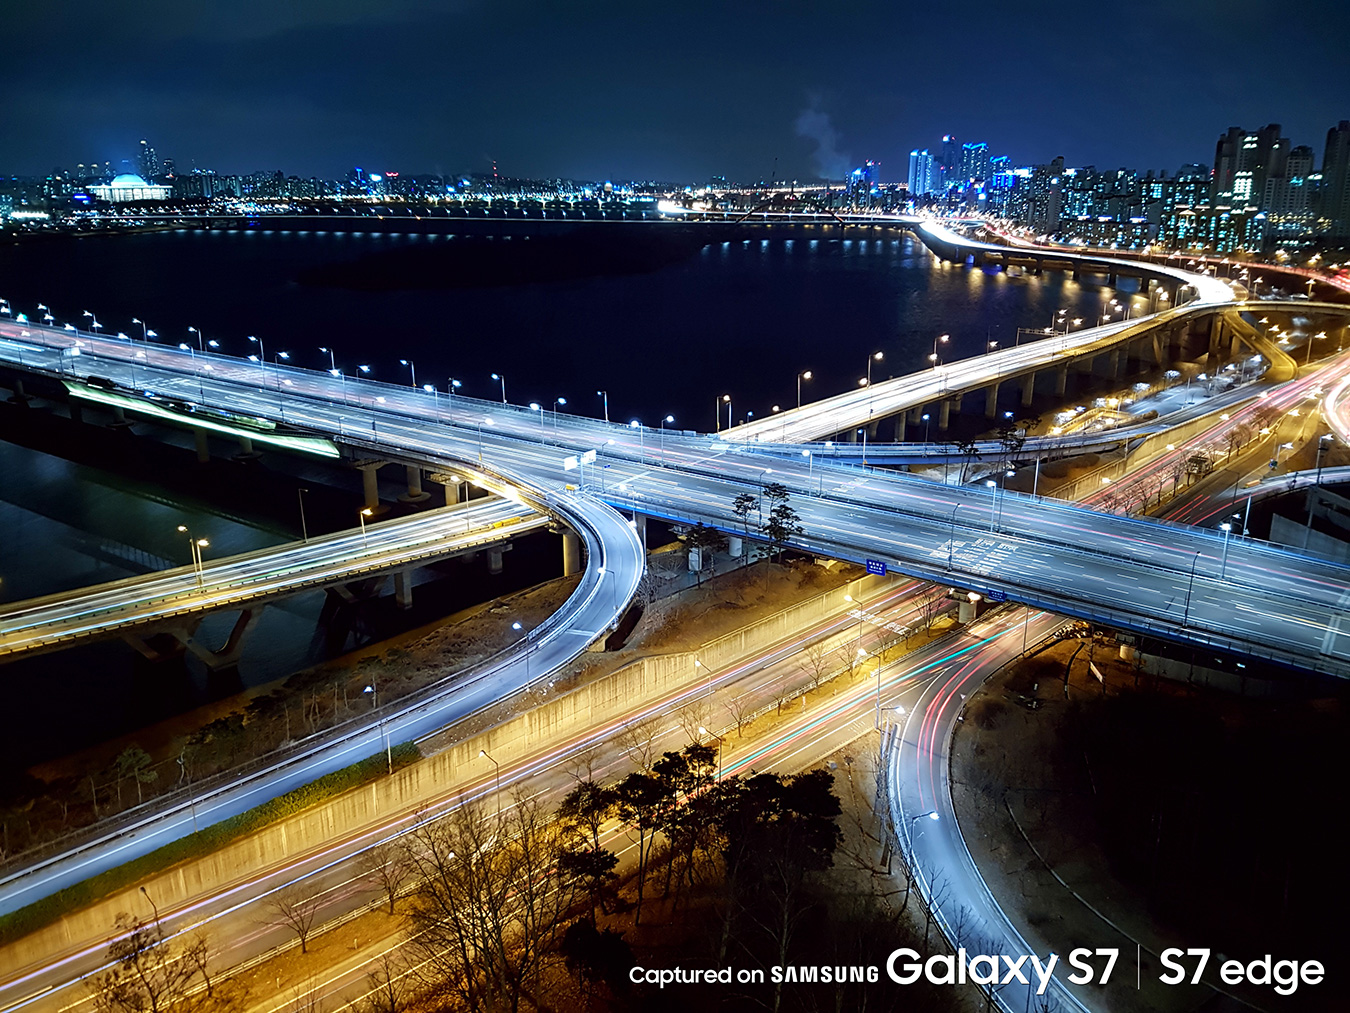 สวยมาก !! เผยภาพที่ถ่ายจากกล้องของ Samsung Galaxy S7 และ Samsung Galaxy S7 Edge